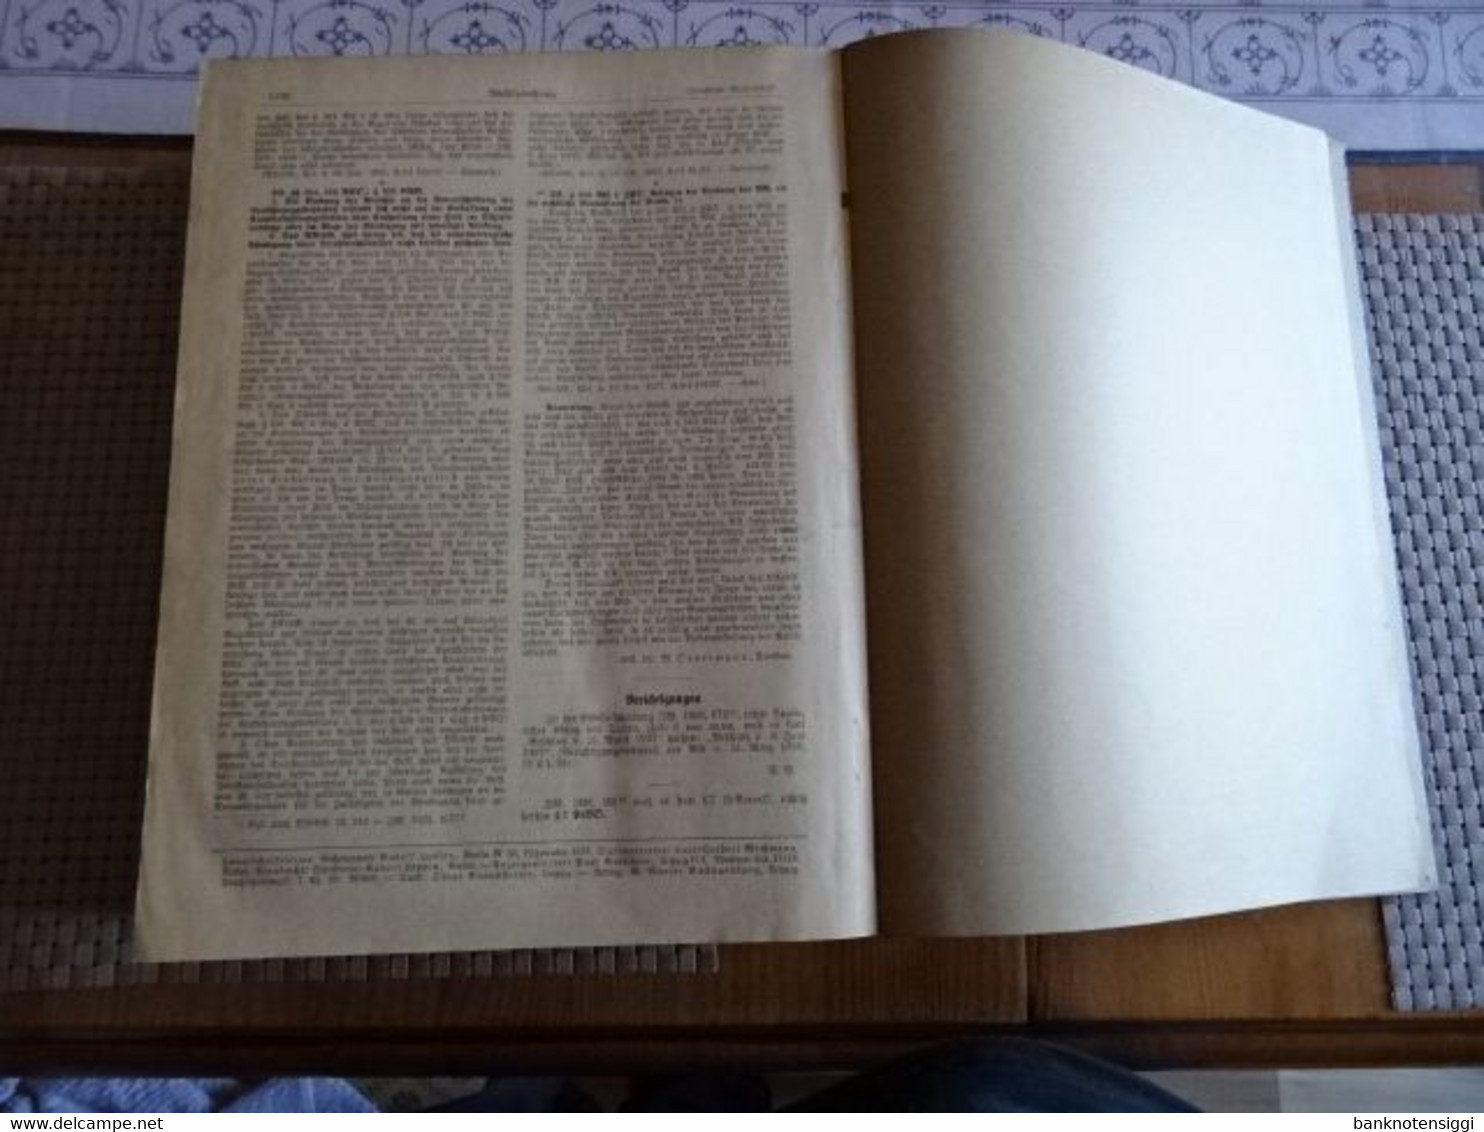 Buch "Juristische Wochenzeitschrift 67 Jahrgang 1938 Band 1 Seite 1-1136